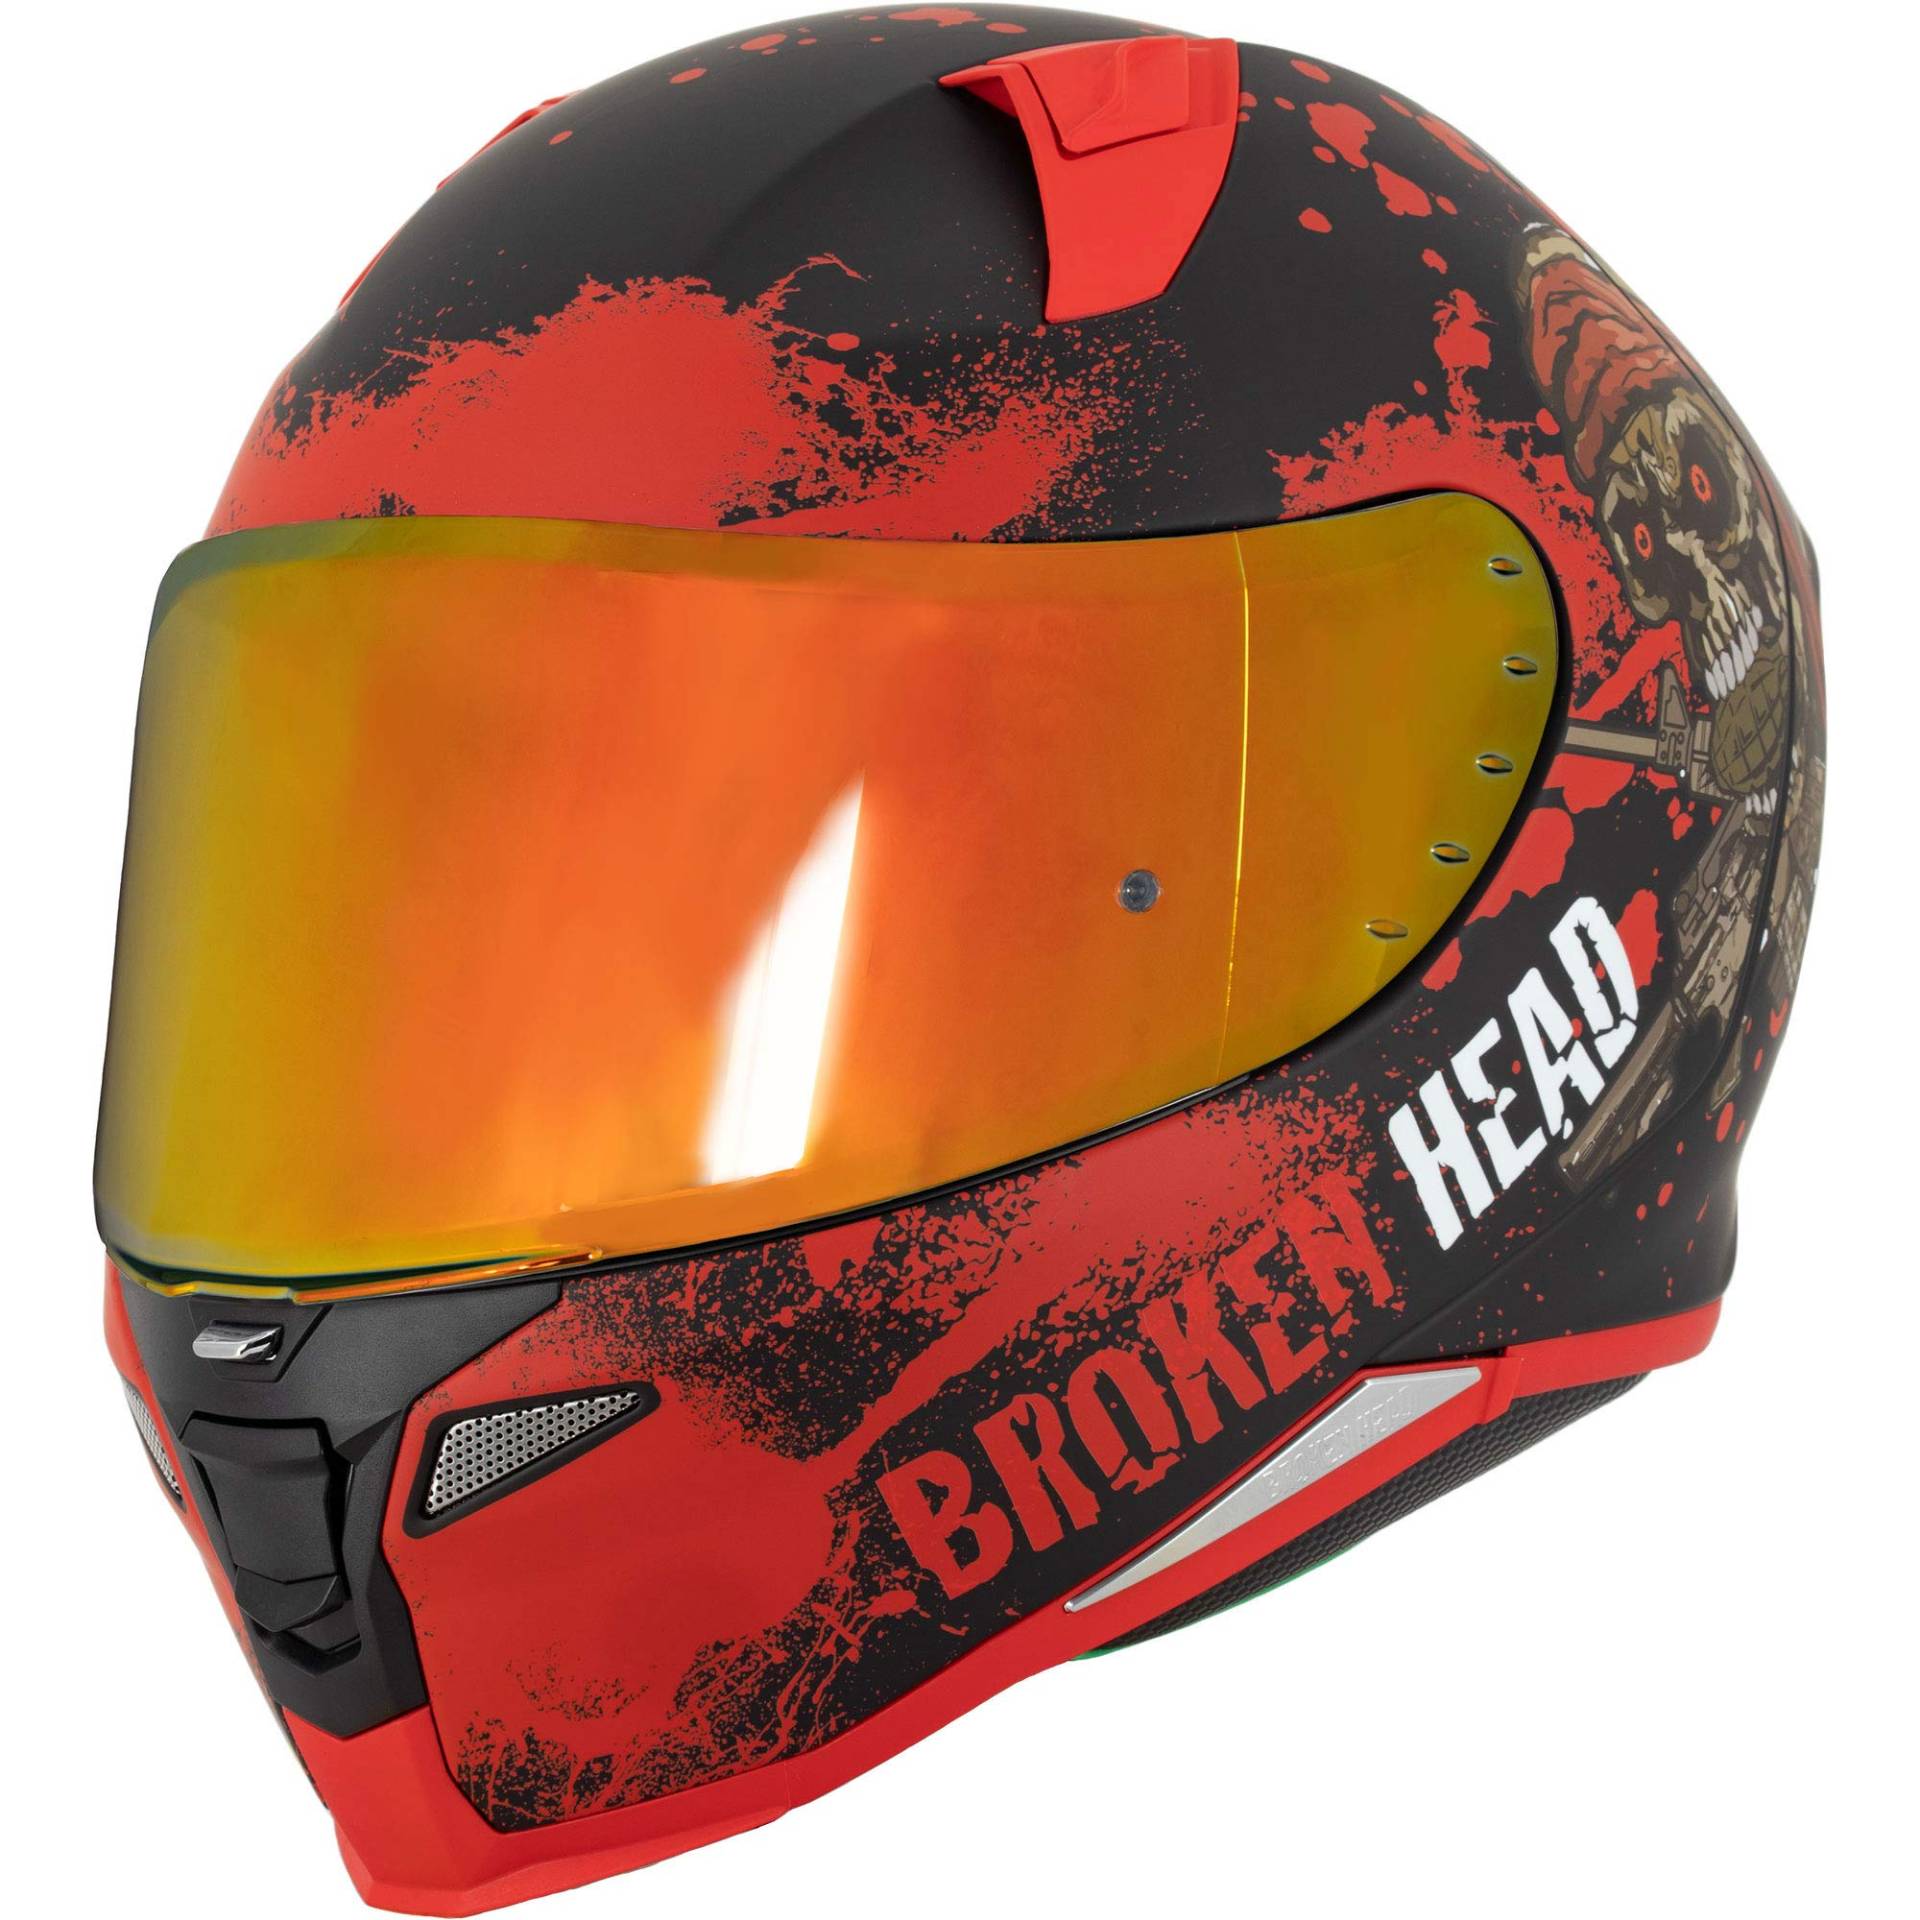 Broken Head Jack S. V2 Pro Rot - Integral-Helm Set Mit Zwei Visieren (Rot Verspiegelt + Klar) Sport Motorradhelm (M 57-58 cm) von Broken Head